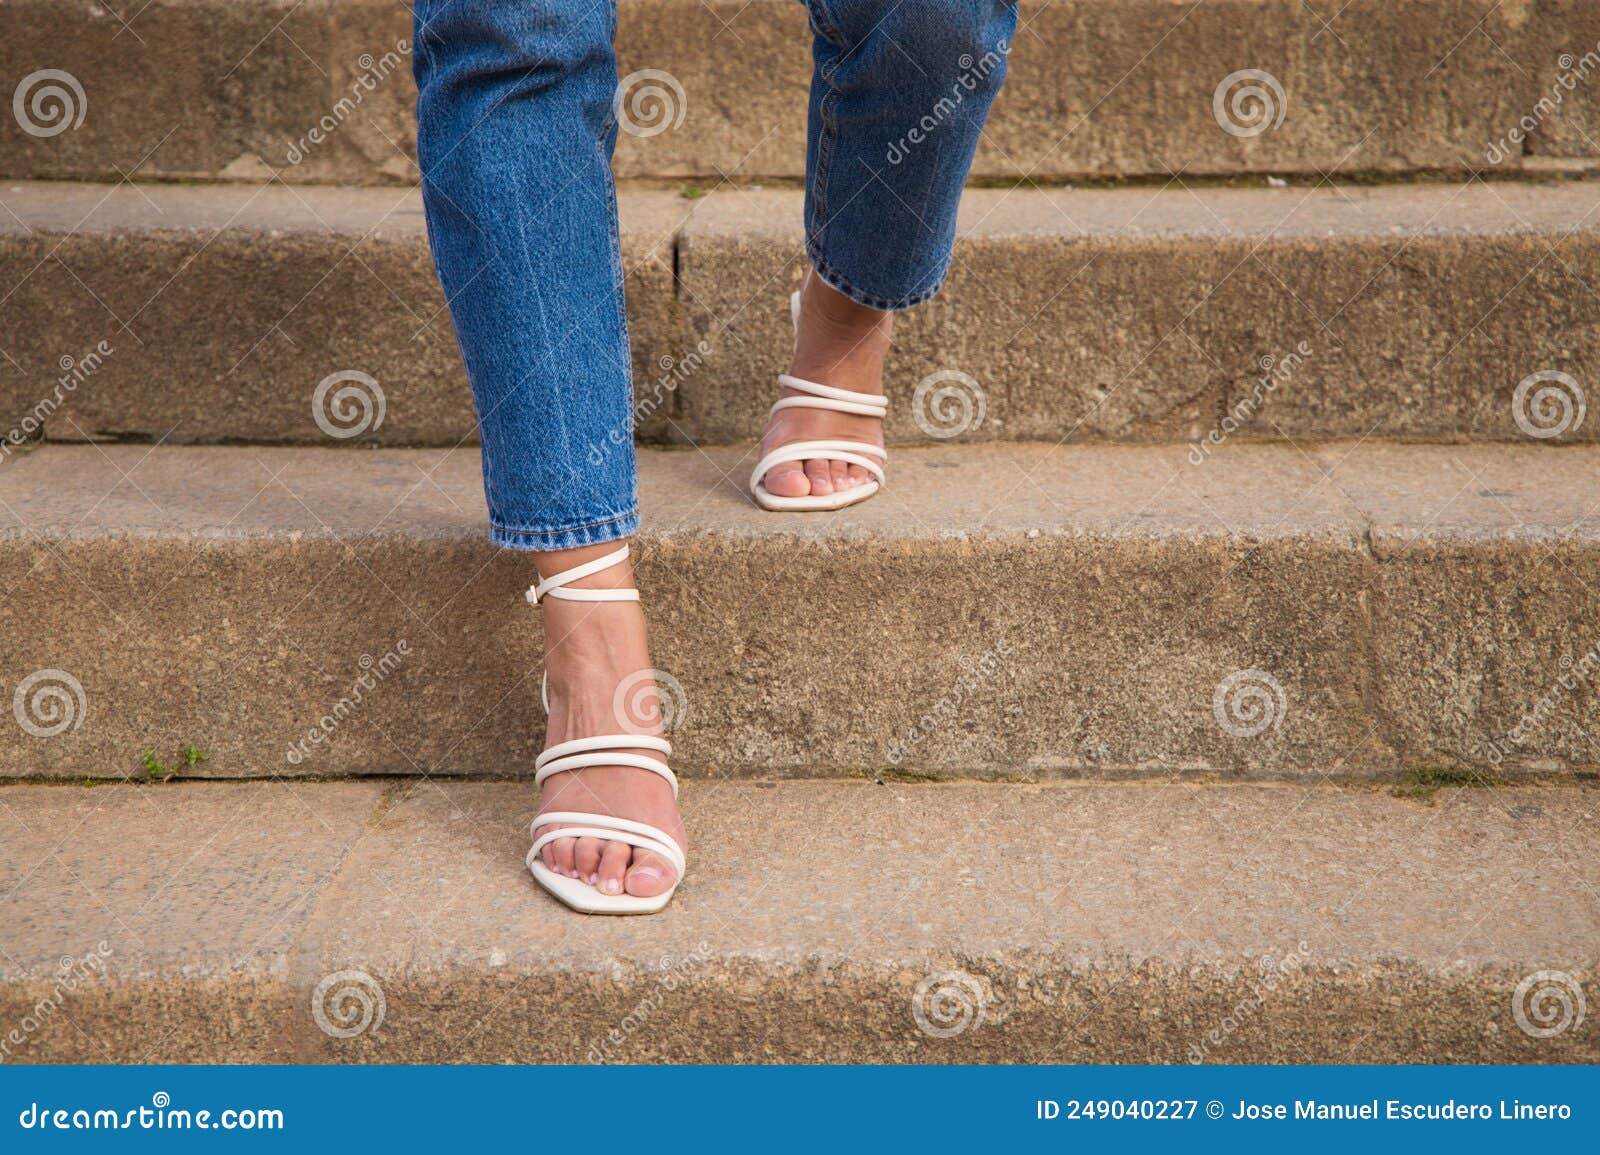 once agenda luces Mujer Caminando Por Las Escaleras Con Tacones Altos. Pueden Ver Sus Pies  Bajando Por Los Escalones Imagen de archivo - Imagen de brillante, paso:  249040227